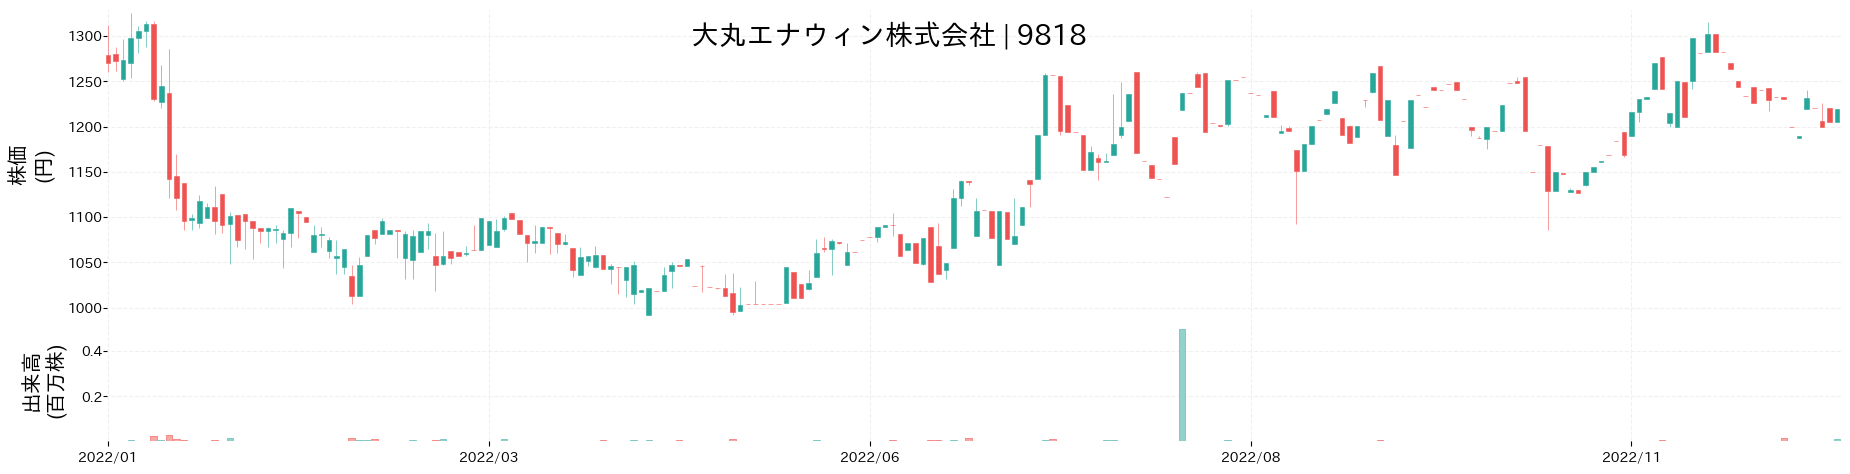 大丸エナウィンの株価推移(2022)